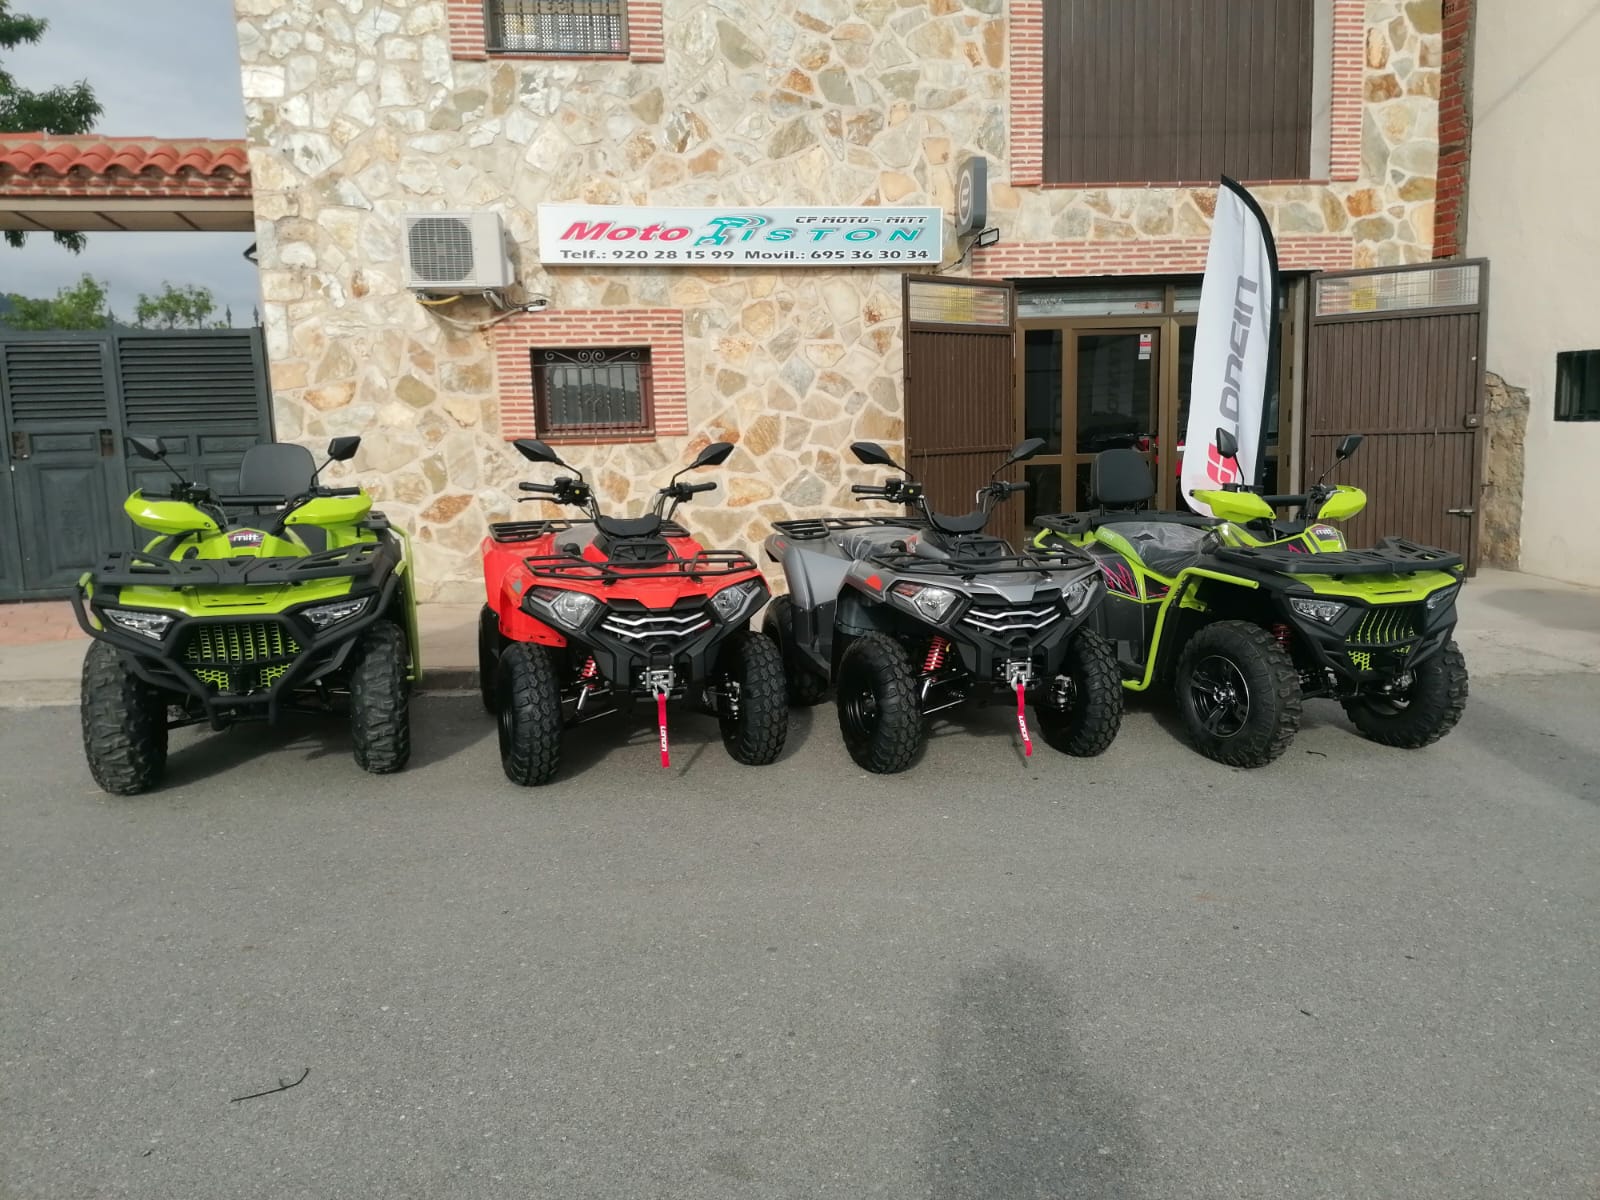 Quads y Motos en El Barraco, Avila